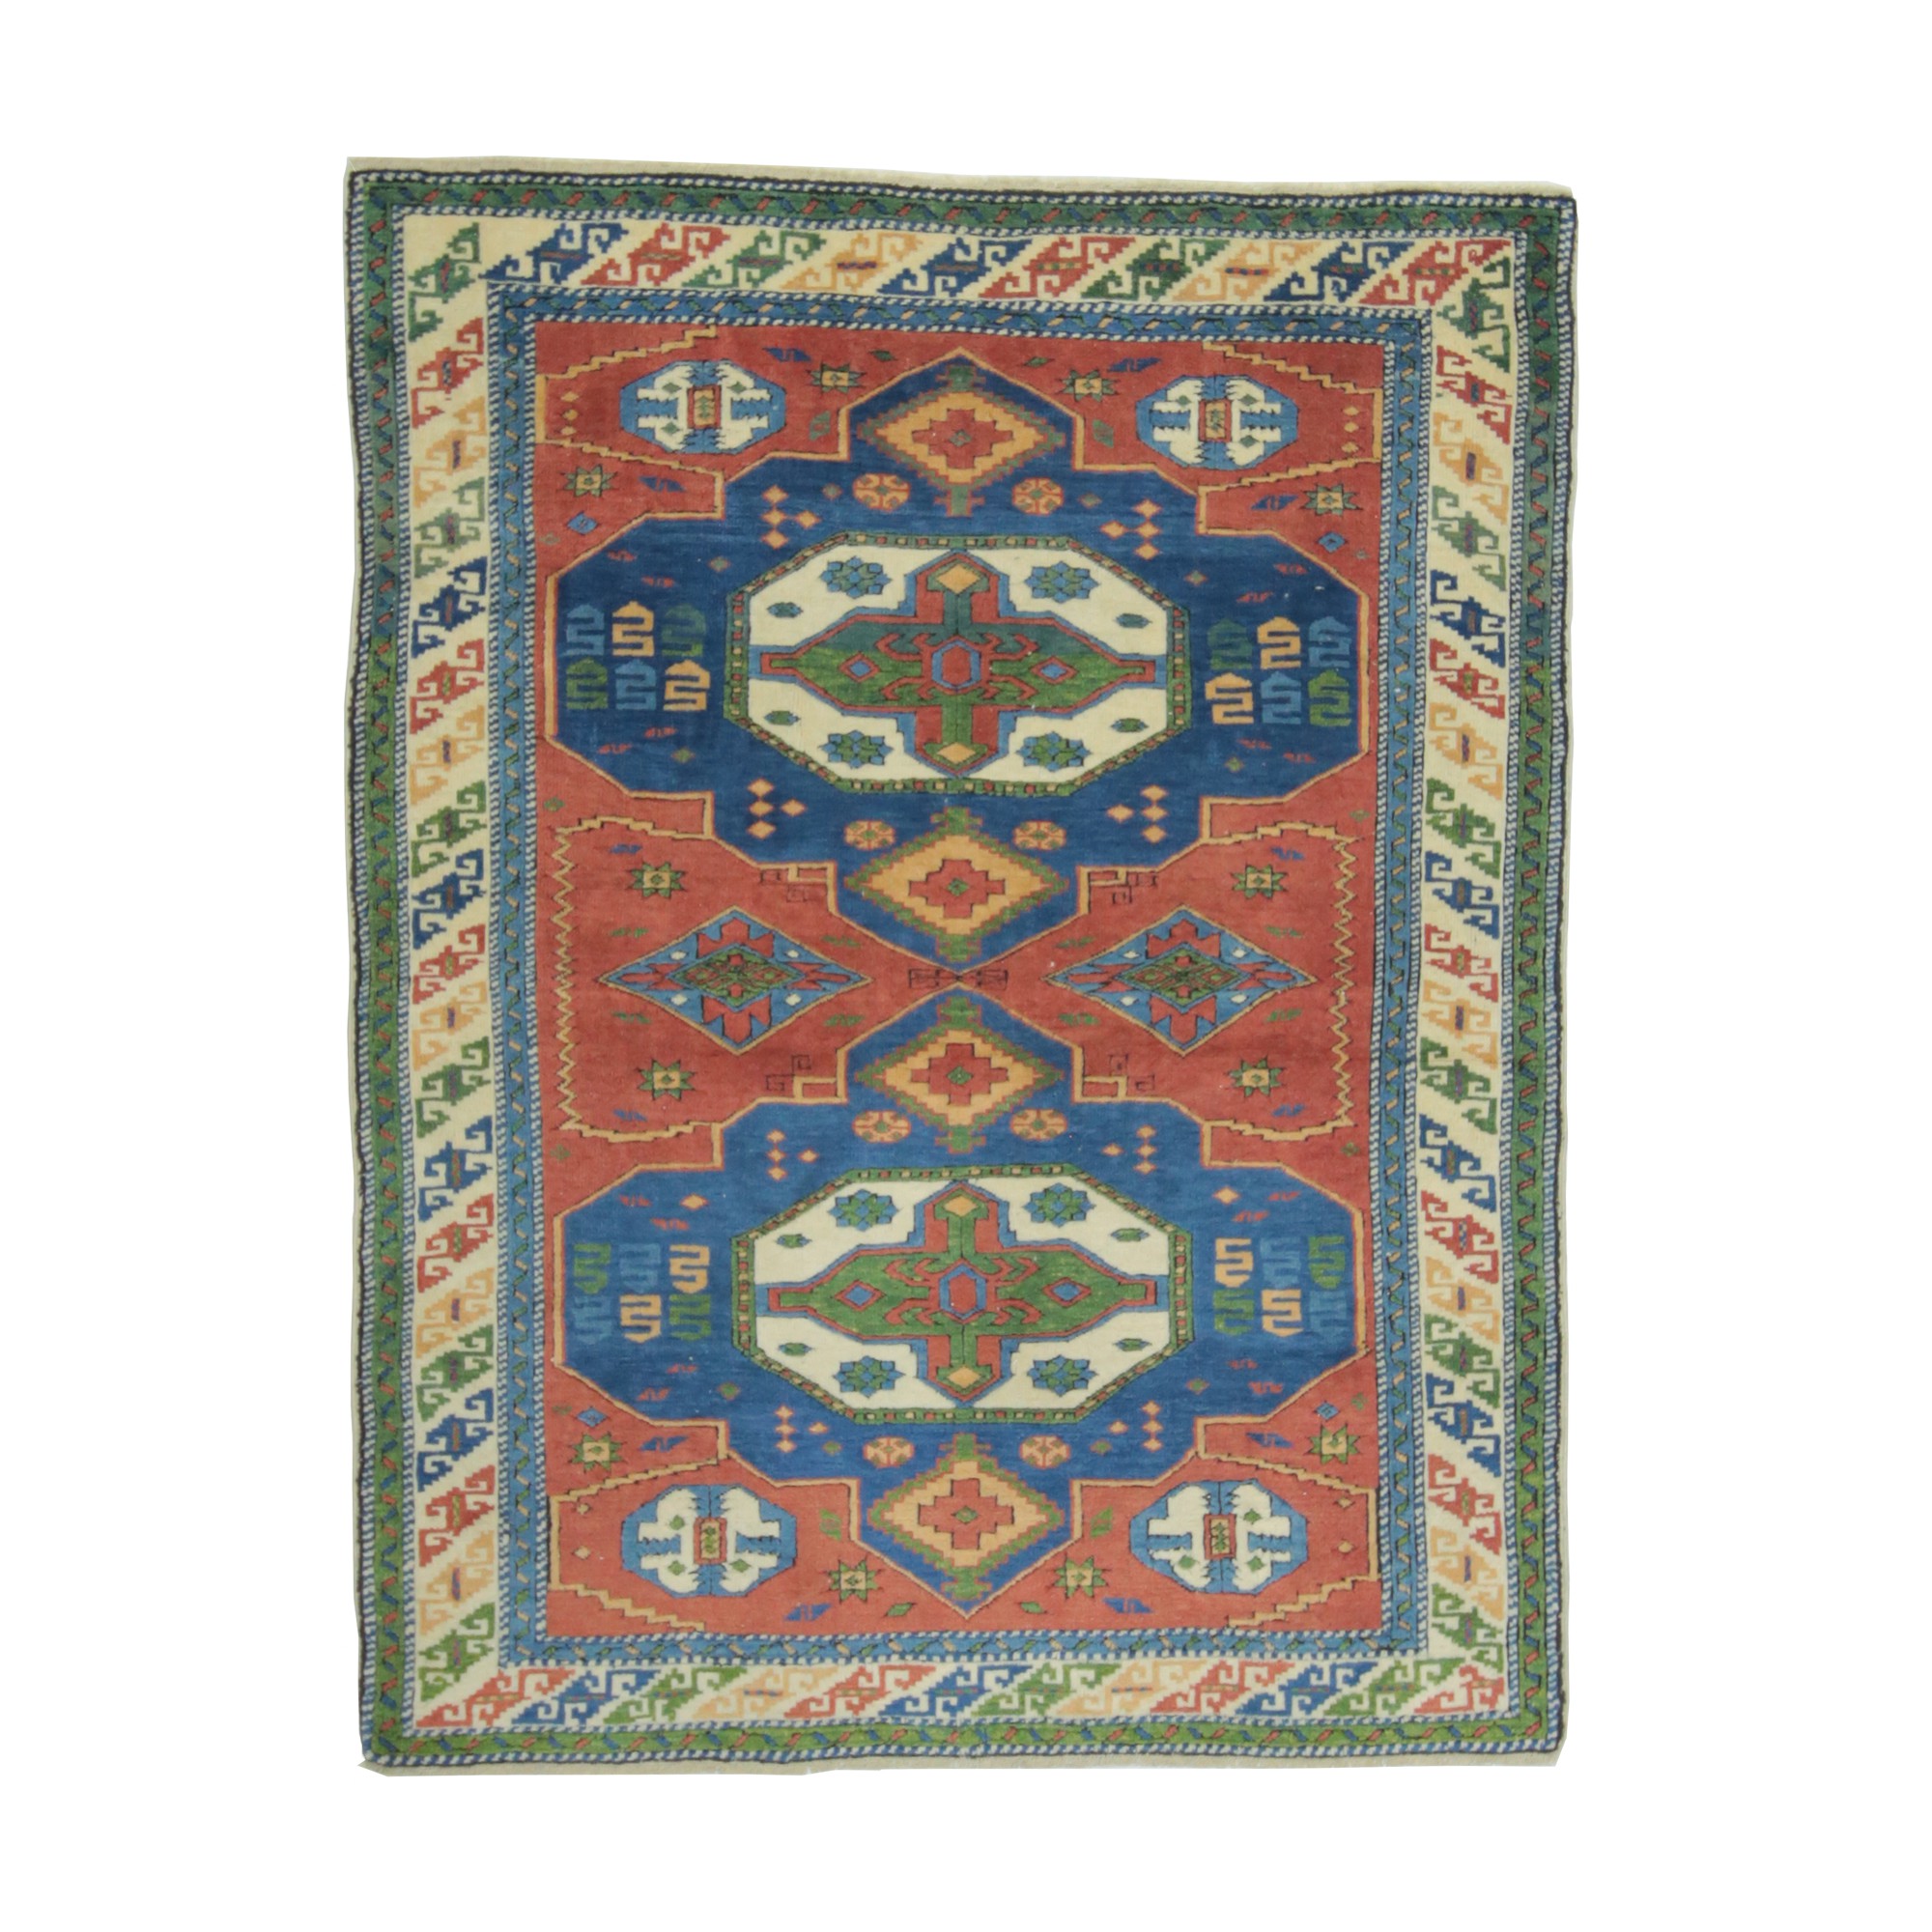 3857  129,166 - Turkish Carpet Rug 